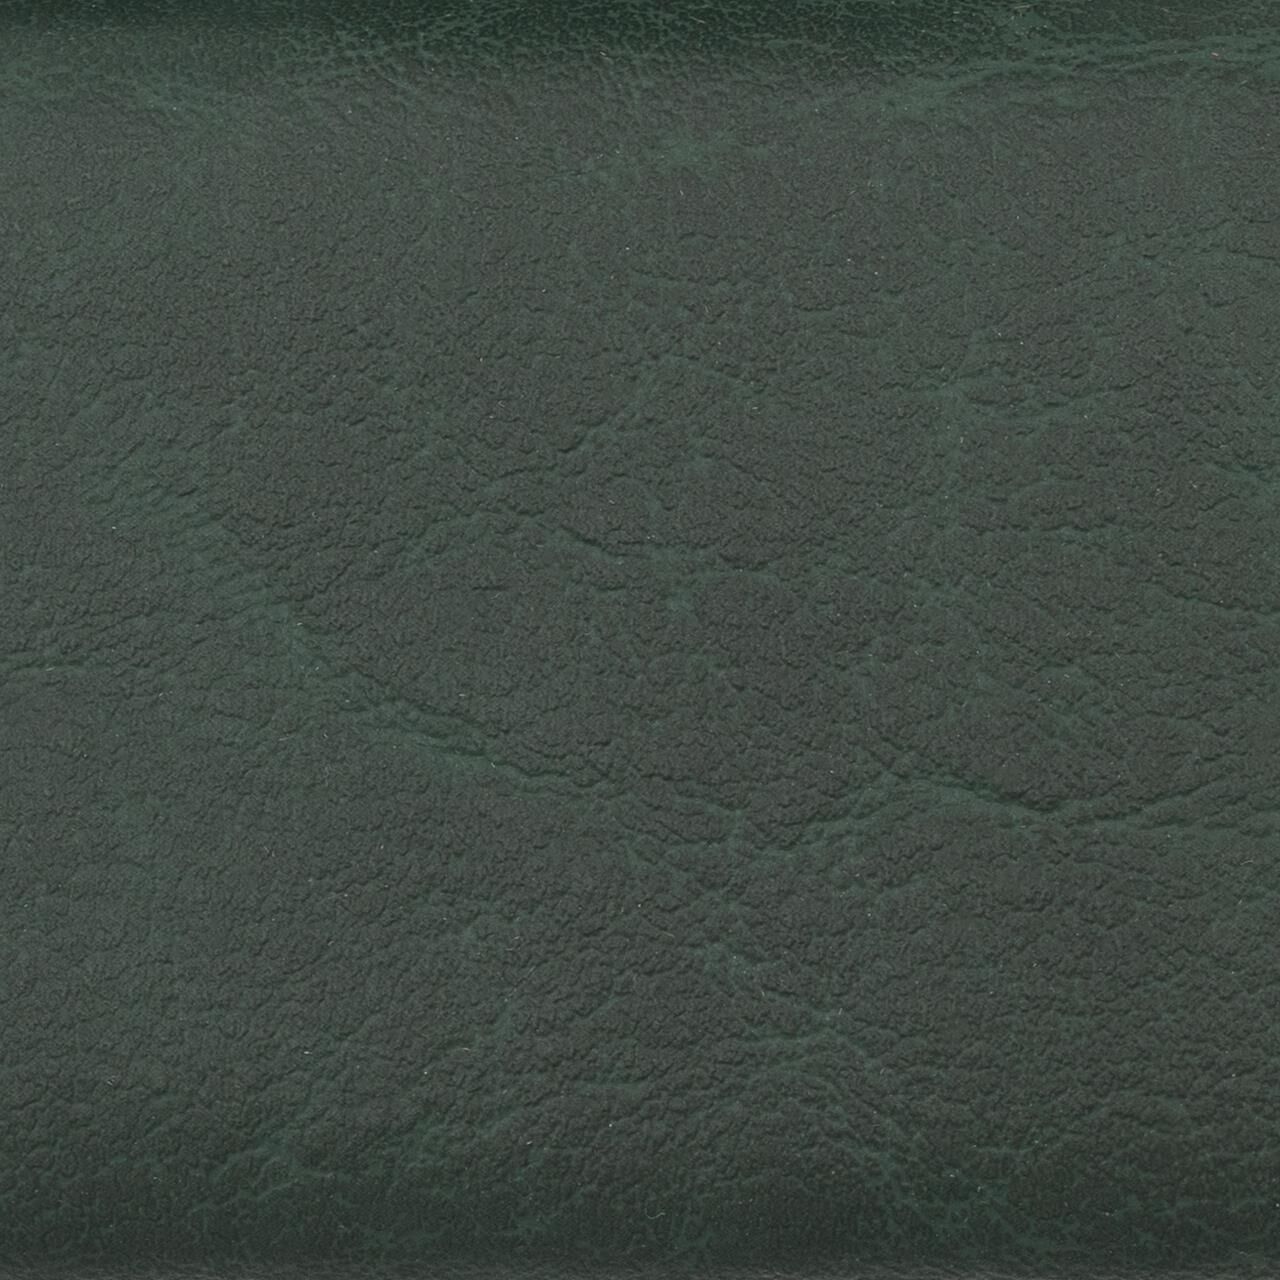 Whirlpool-Nackenkissen für Softub - 32 x 26 cm - forest green